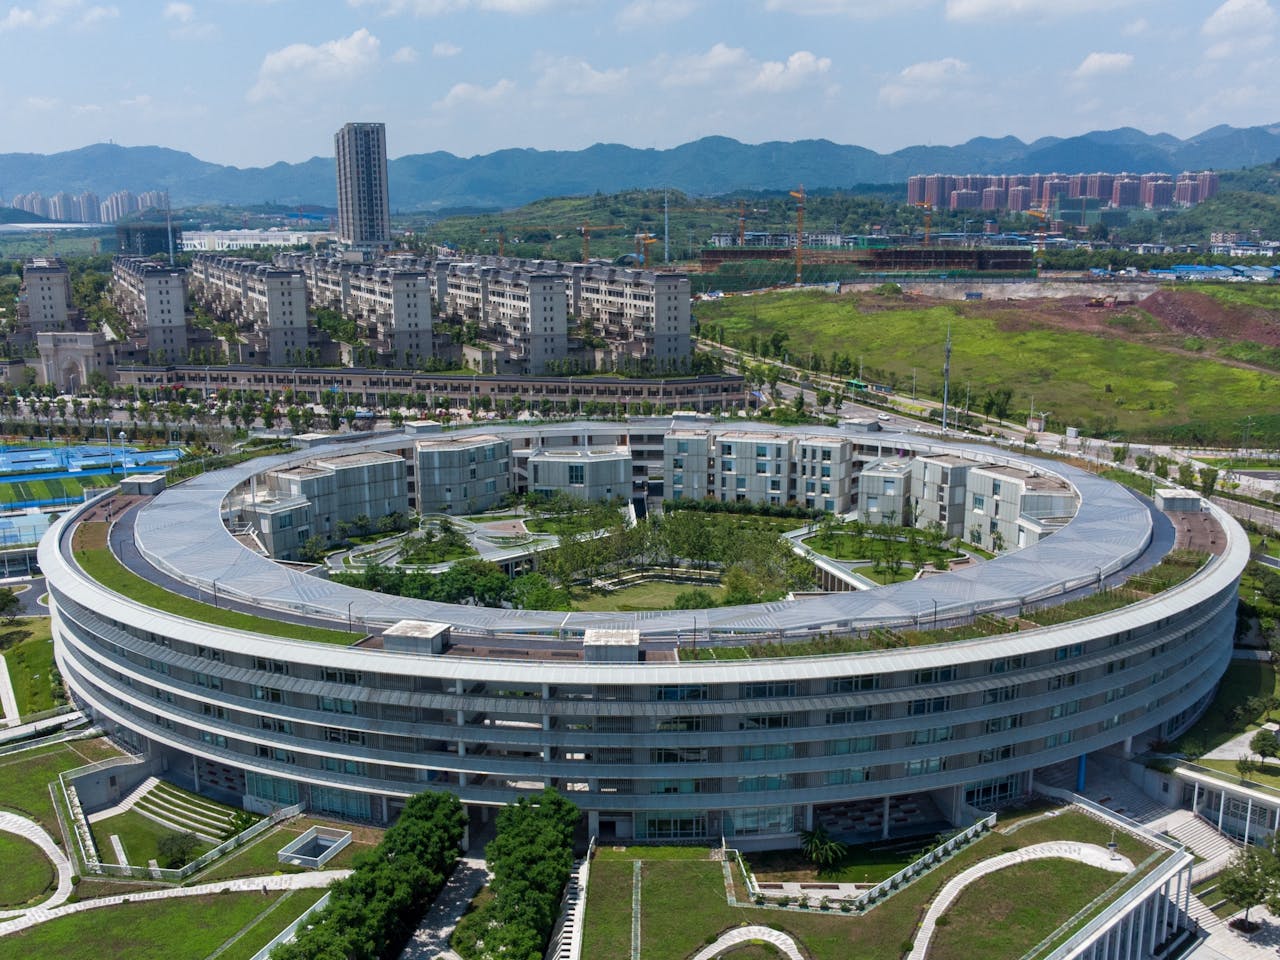 Het kantoor van Apple in het Chinese Chongqing heeft net als het hoofdkantoor in Cupertino de vorm van een cirkel.